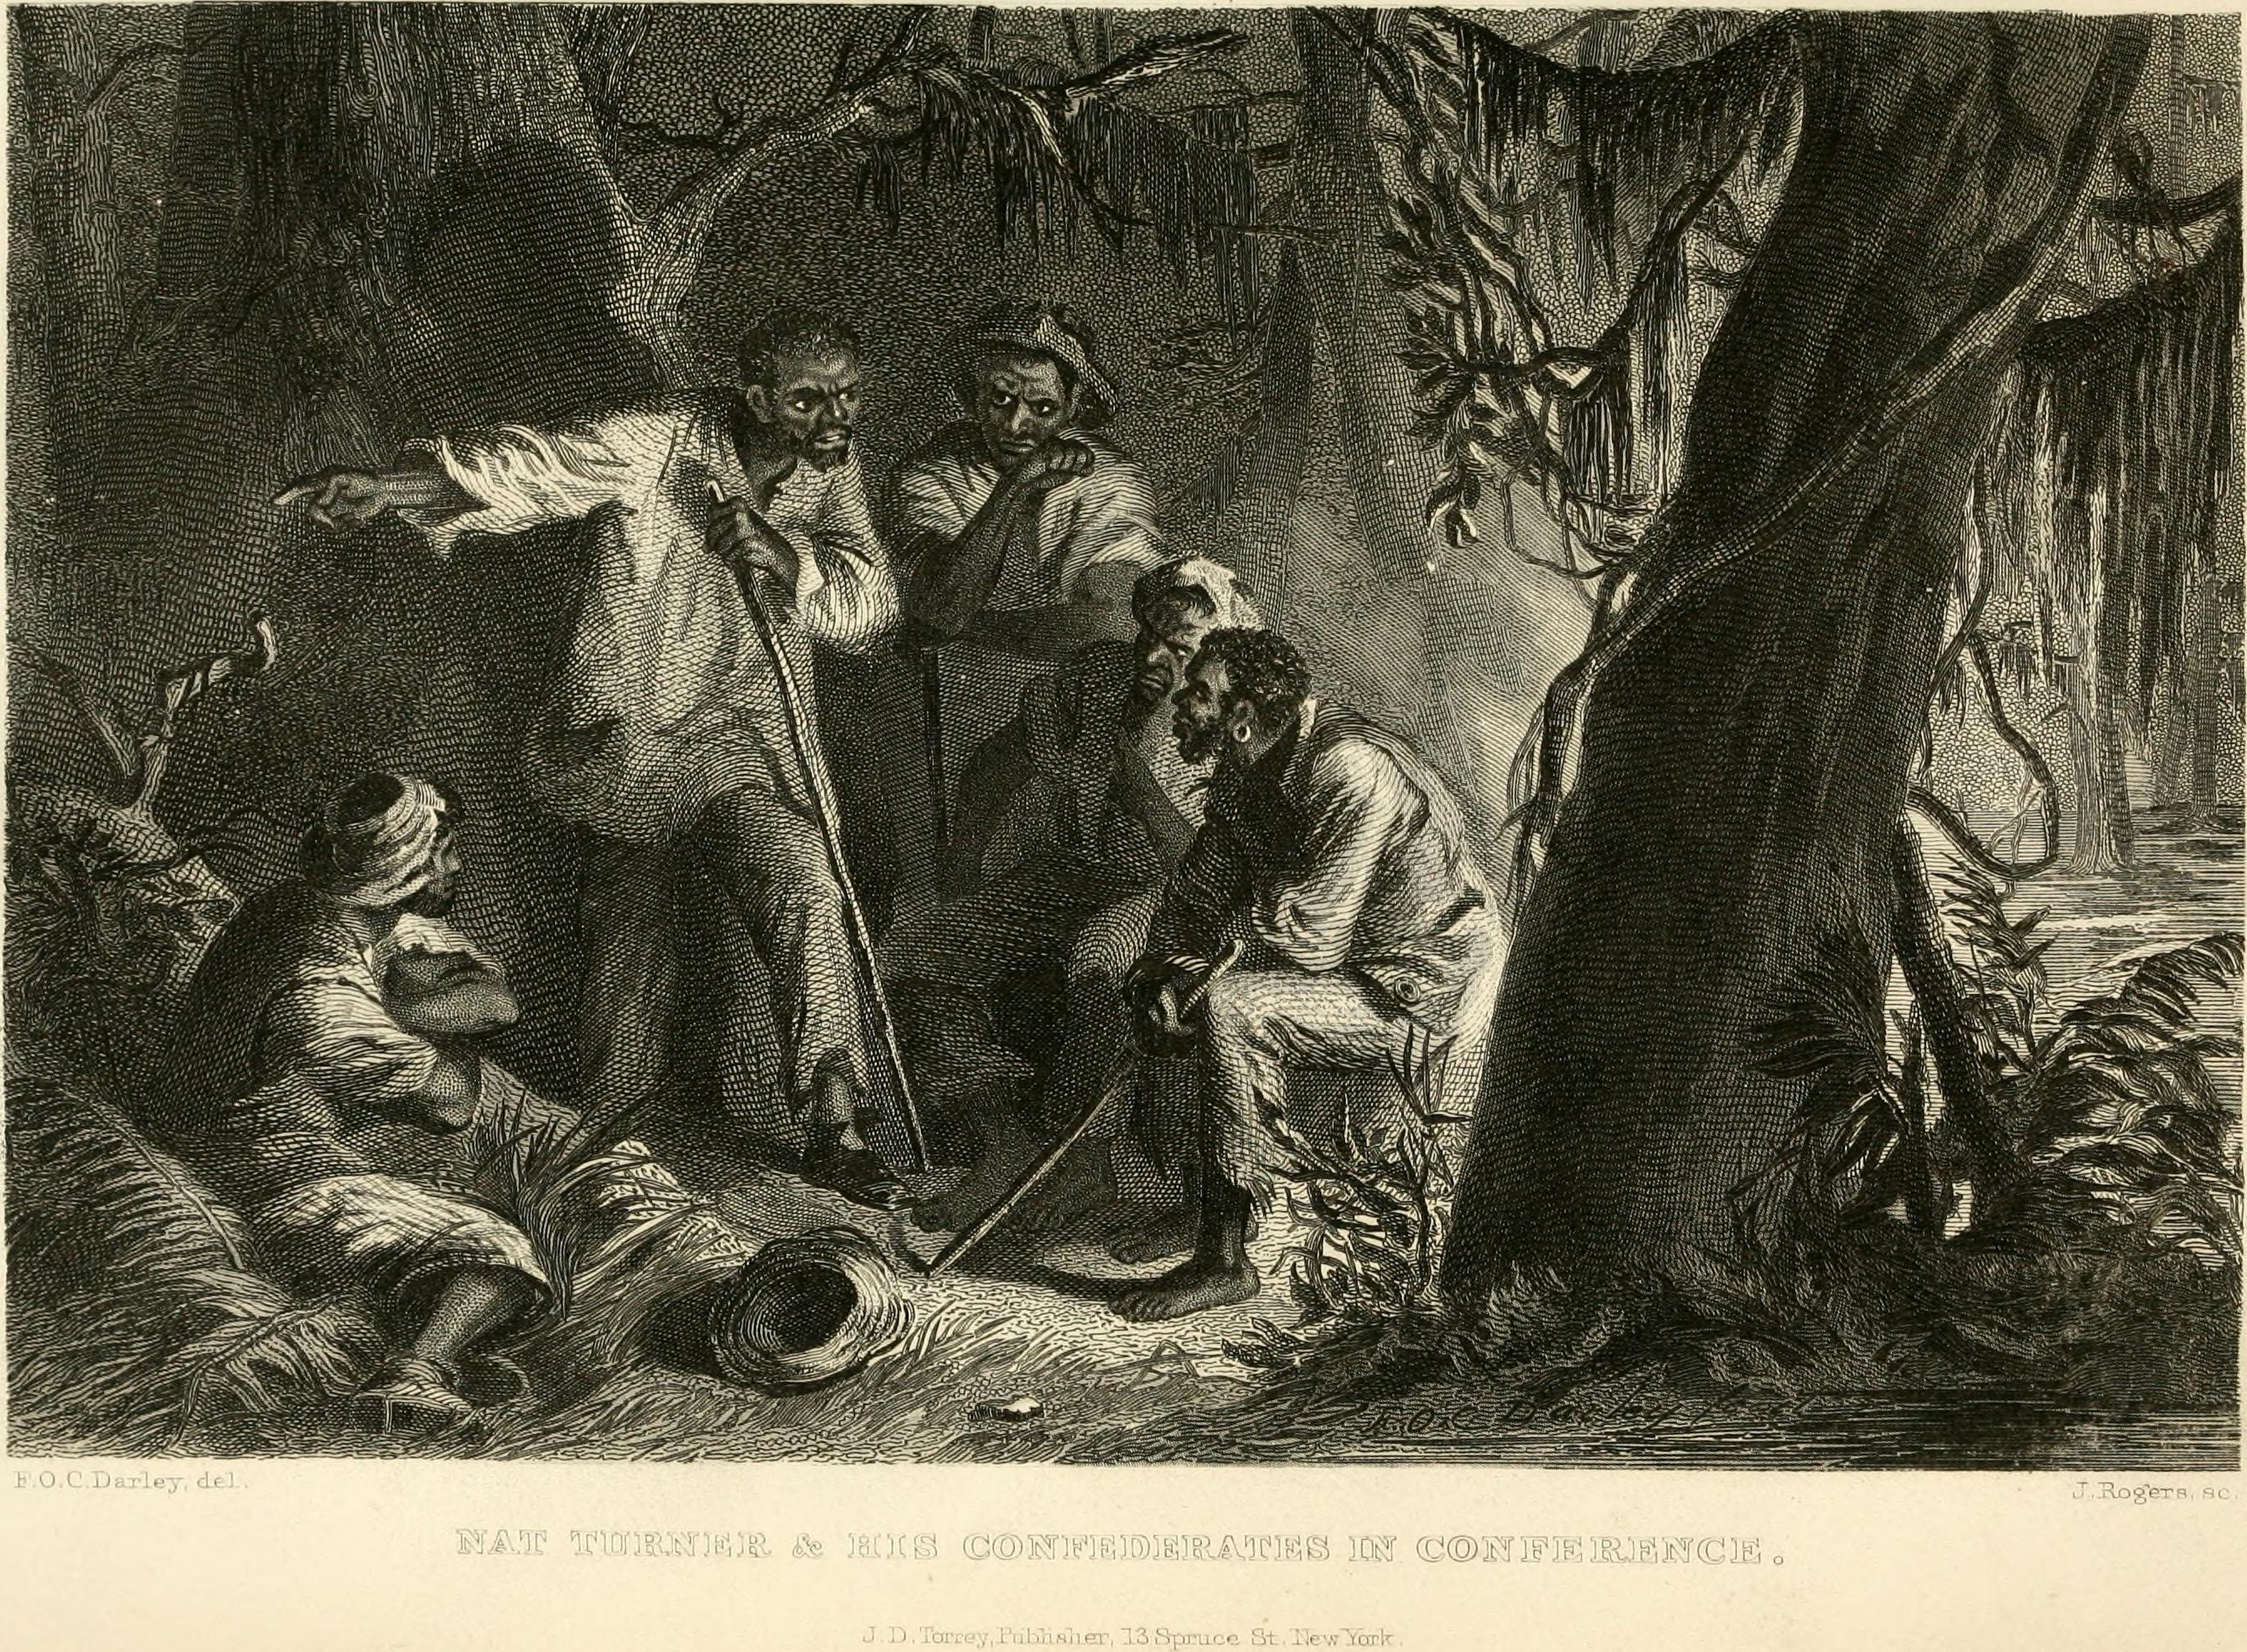 Image of Nat Turner talking to other slaves